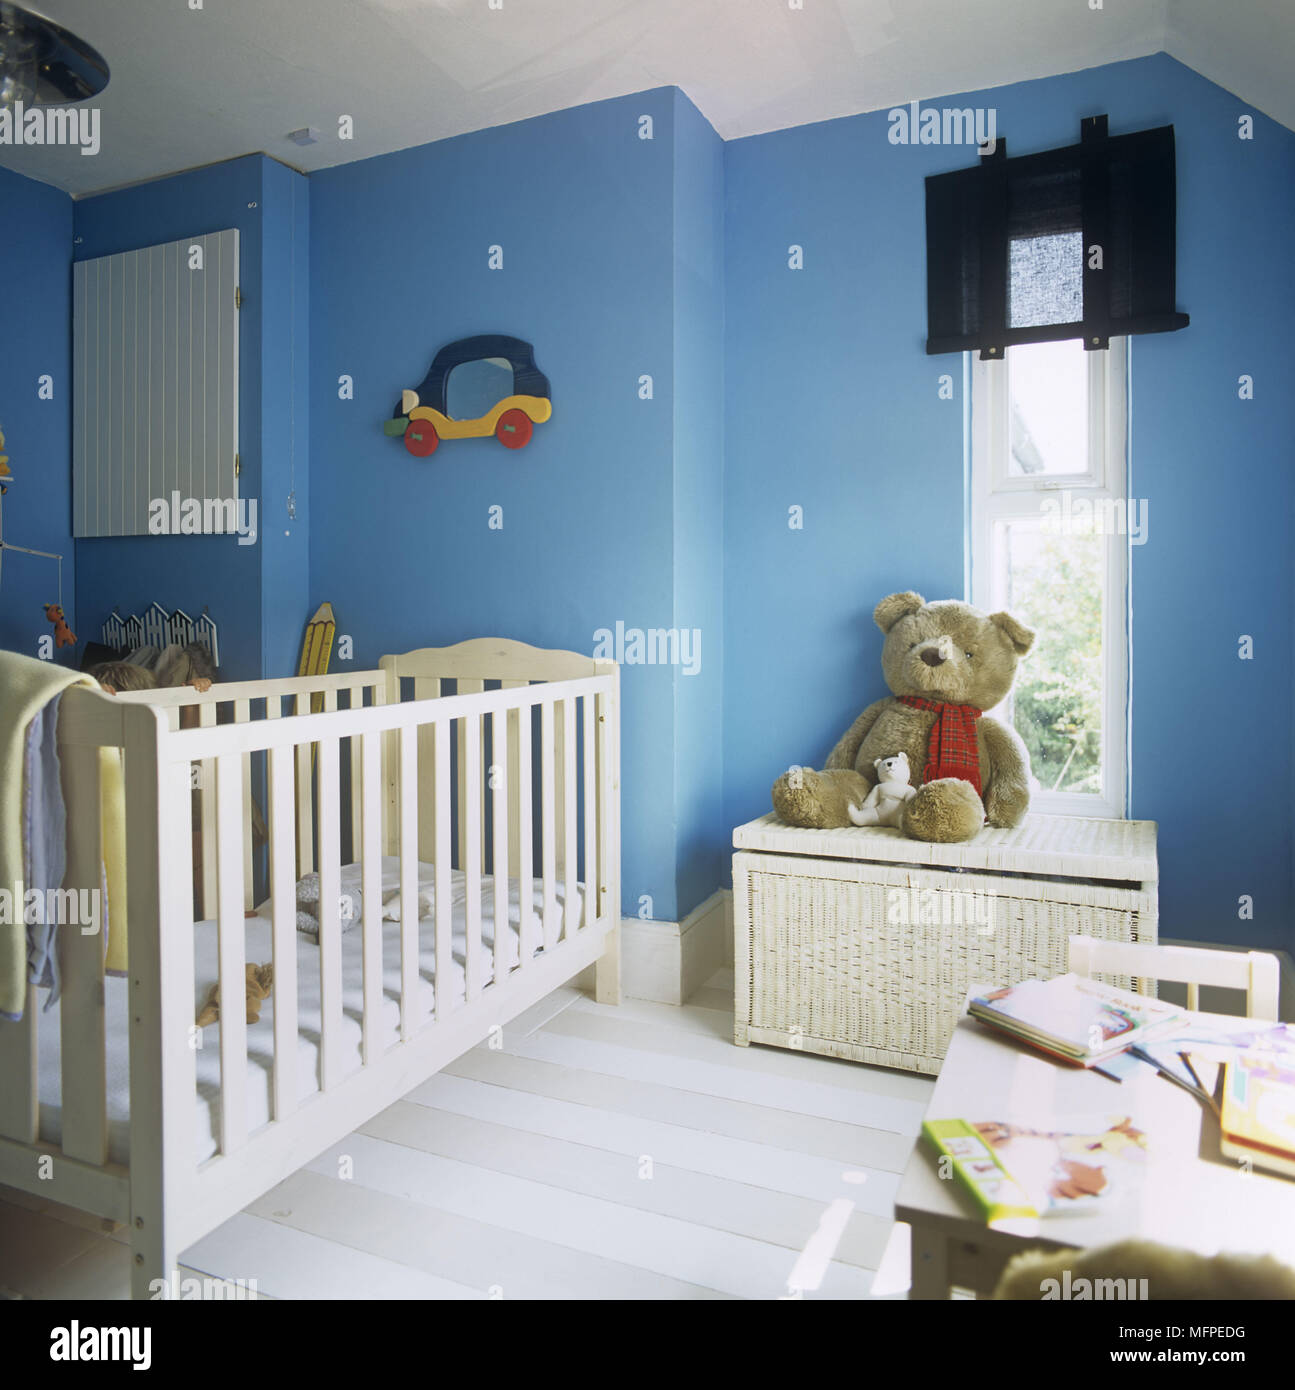 https://c8.alamy.com/compes/mfpedg/detalle-de-la-cuna-y-oso-de-peluche-sentado-en-el-pecho-por-una-ventana-en-una-tradicional-bebe-dormitorio-mfpedg.jpg